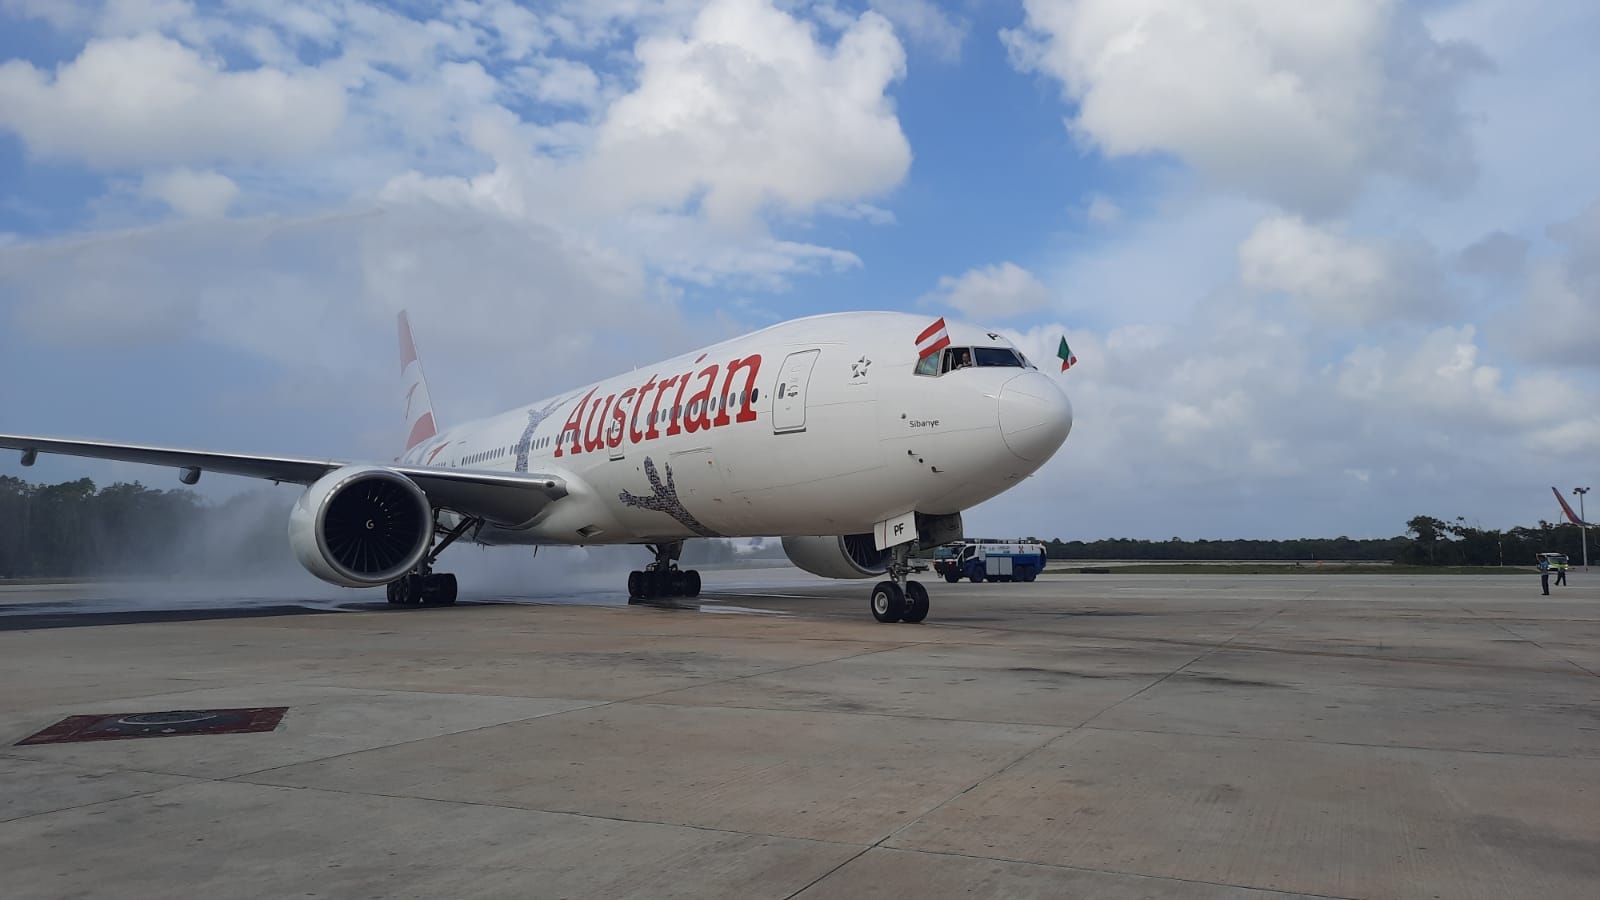 Aeropuerto de Cancún recibe el primer vuelo directo desde Viena tras 14 años sin operaciones